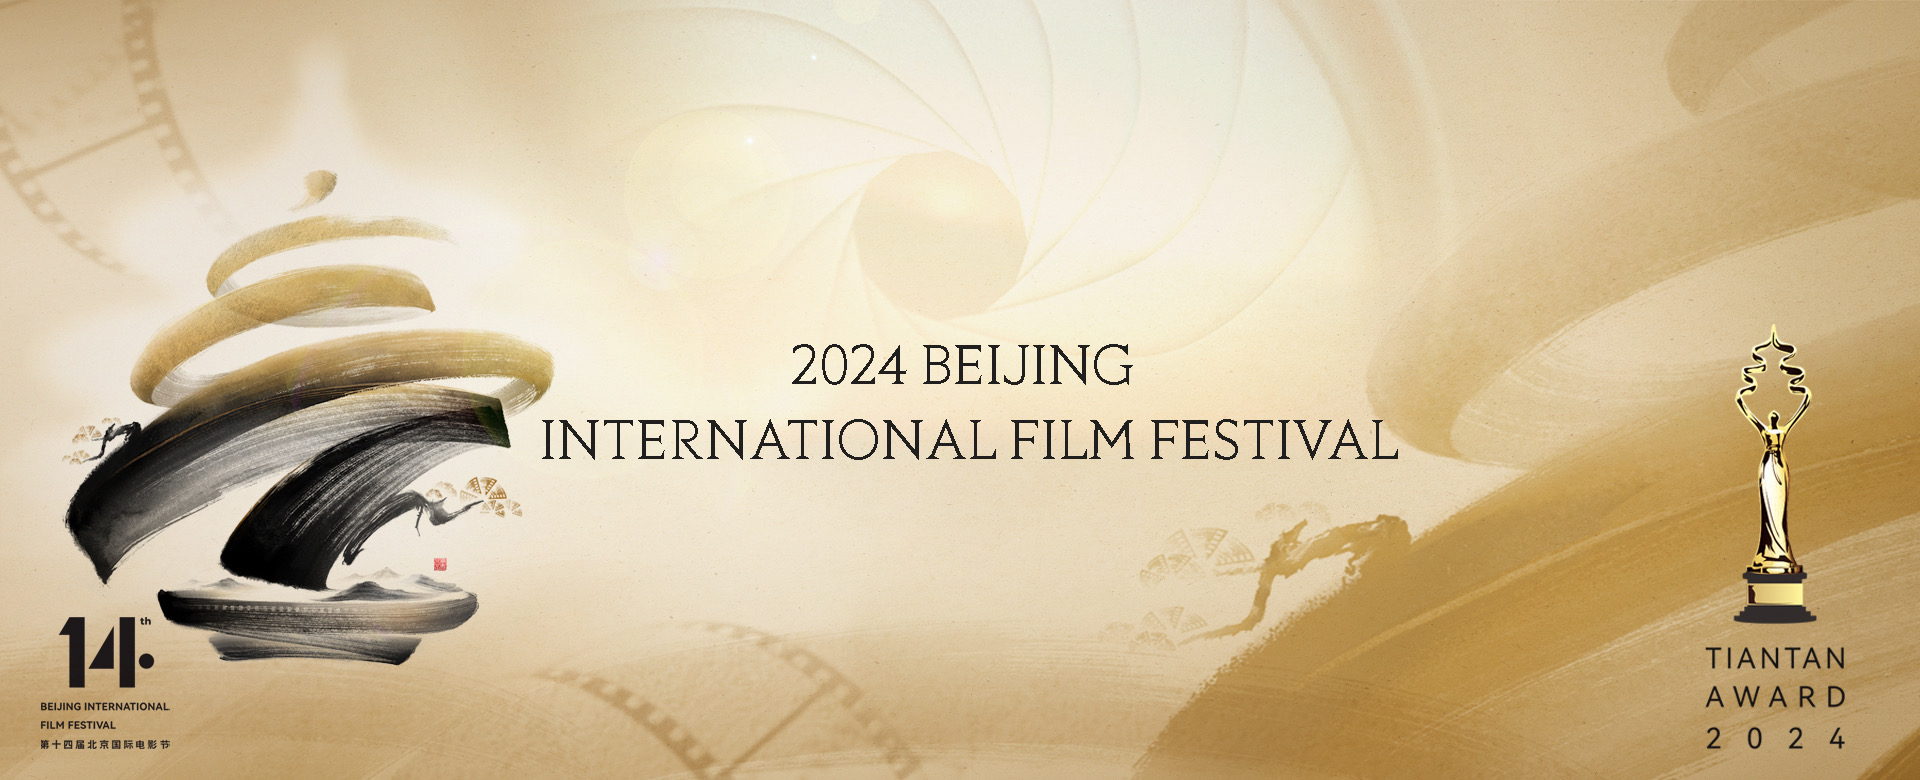 14th Beijing International Film Festival